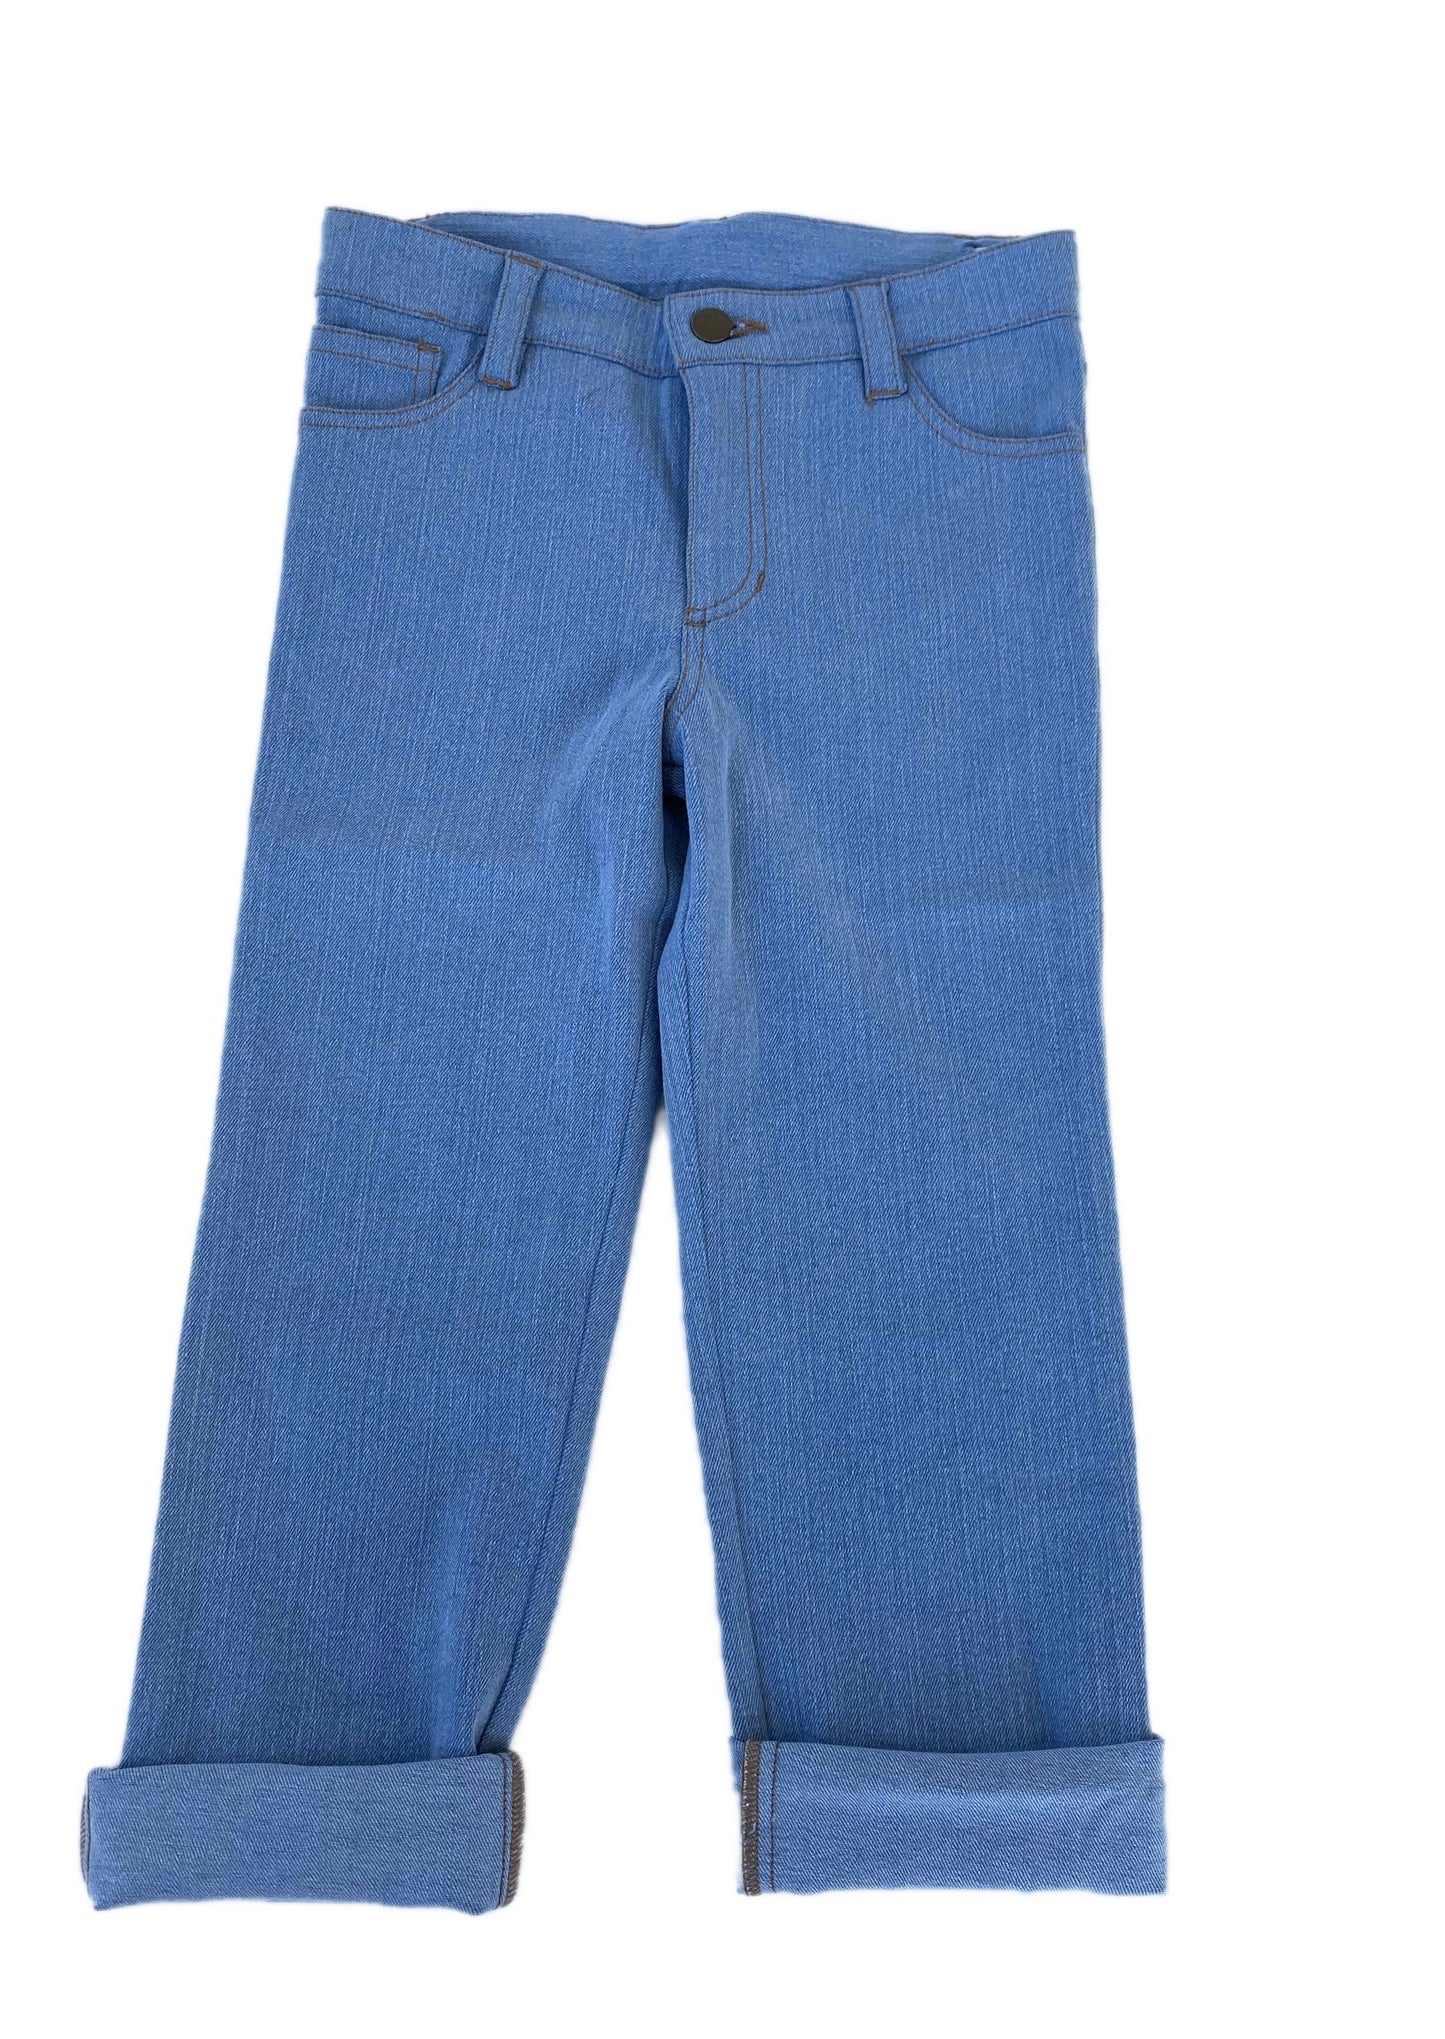 Jeans - Retro Wash